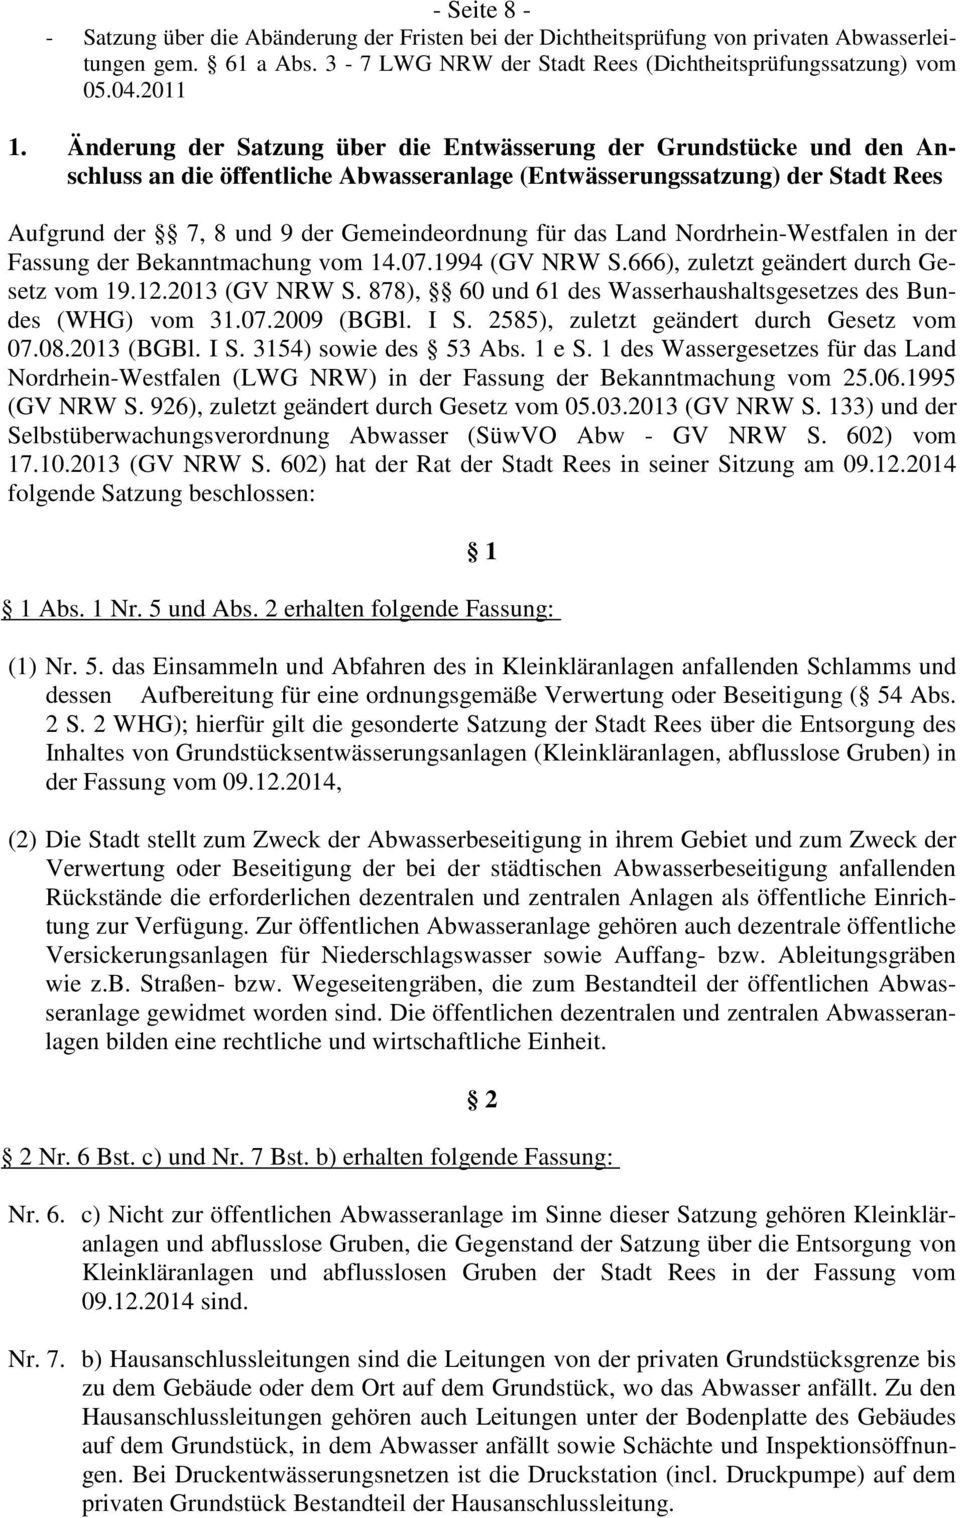 das Land Nordrhein-Westfalen in der Fassung der Bekanntmachung vom 14.07.1994 (GV NRW S.666), zuletzt geändert durch Gesetz vom 19.12.2013 (GV NRW S.